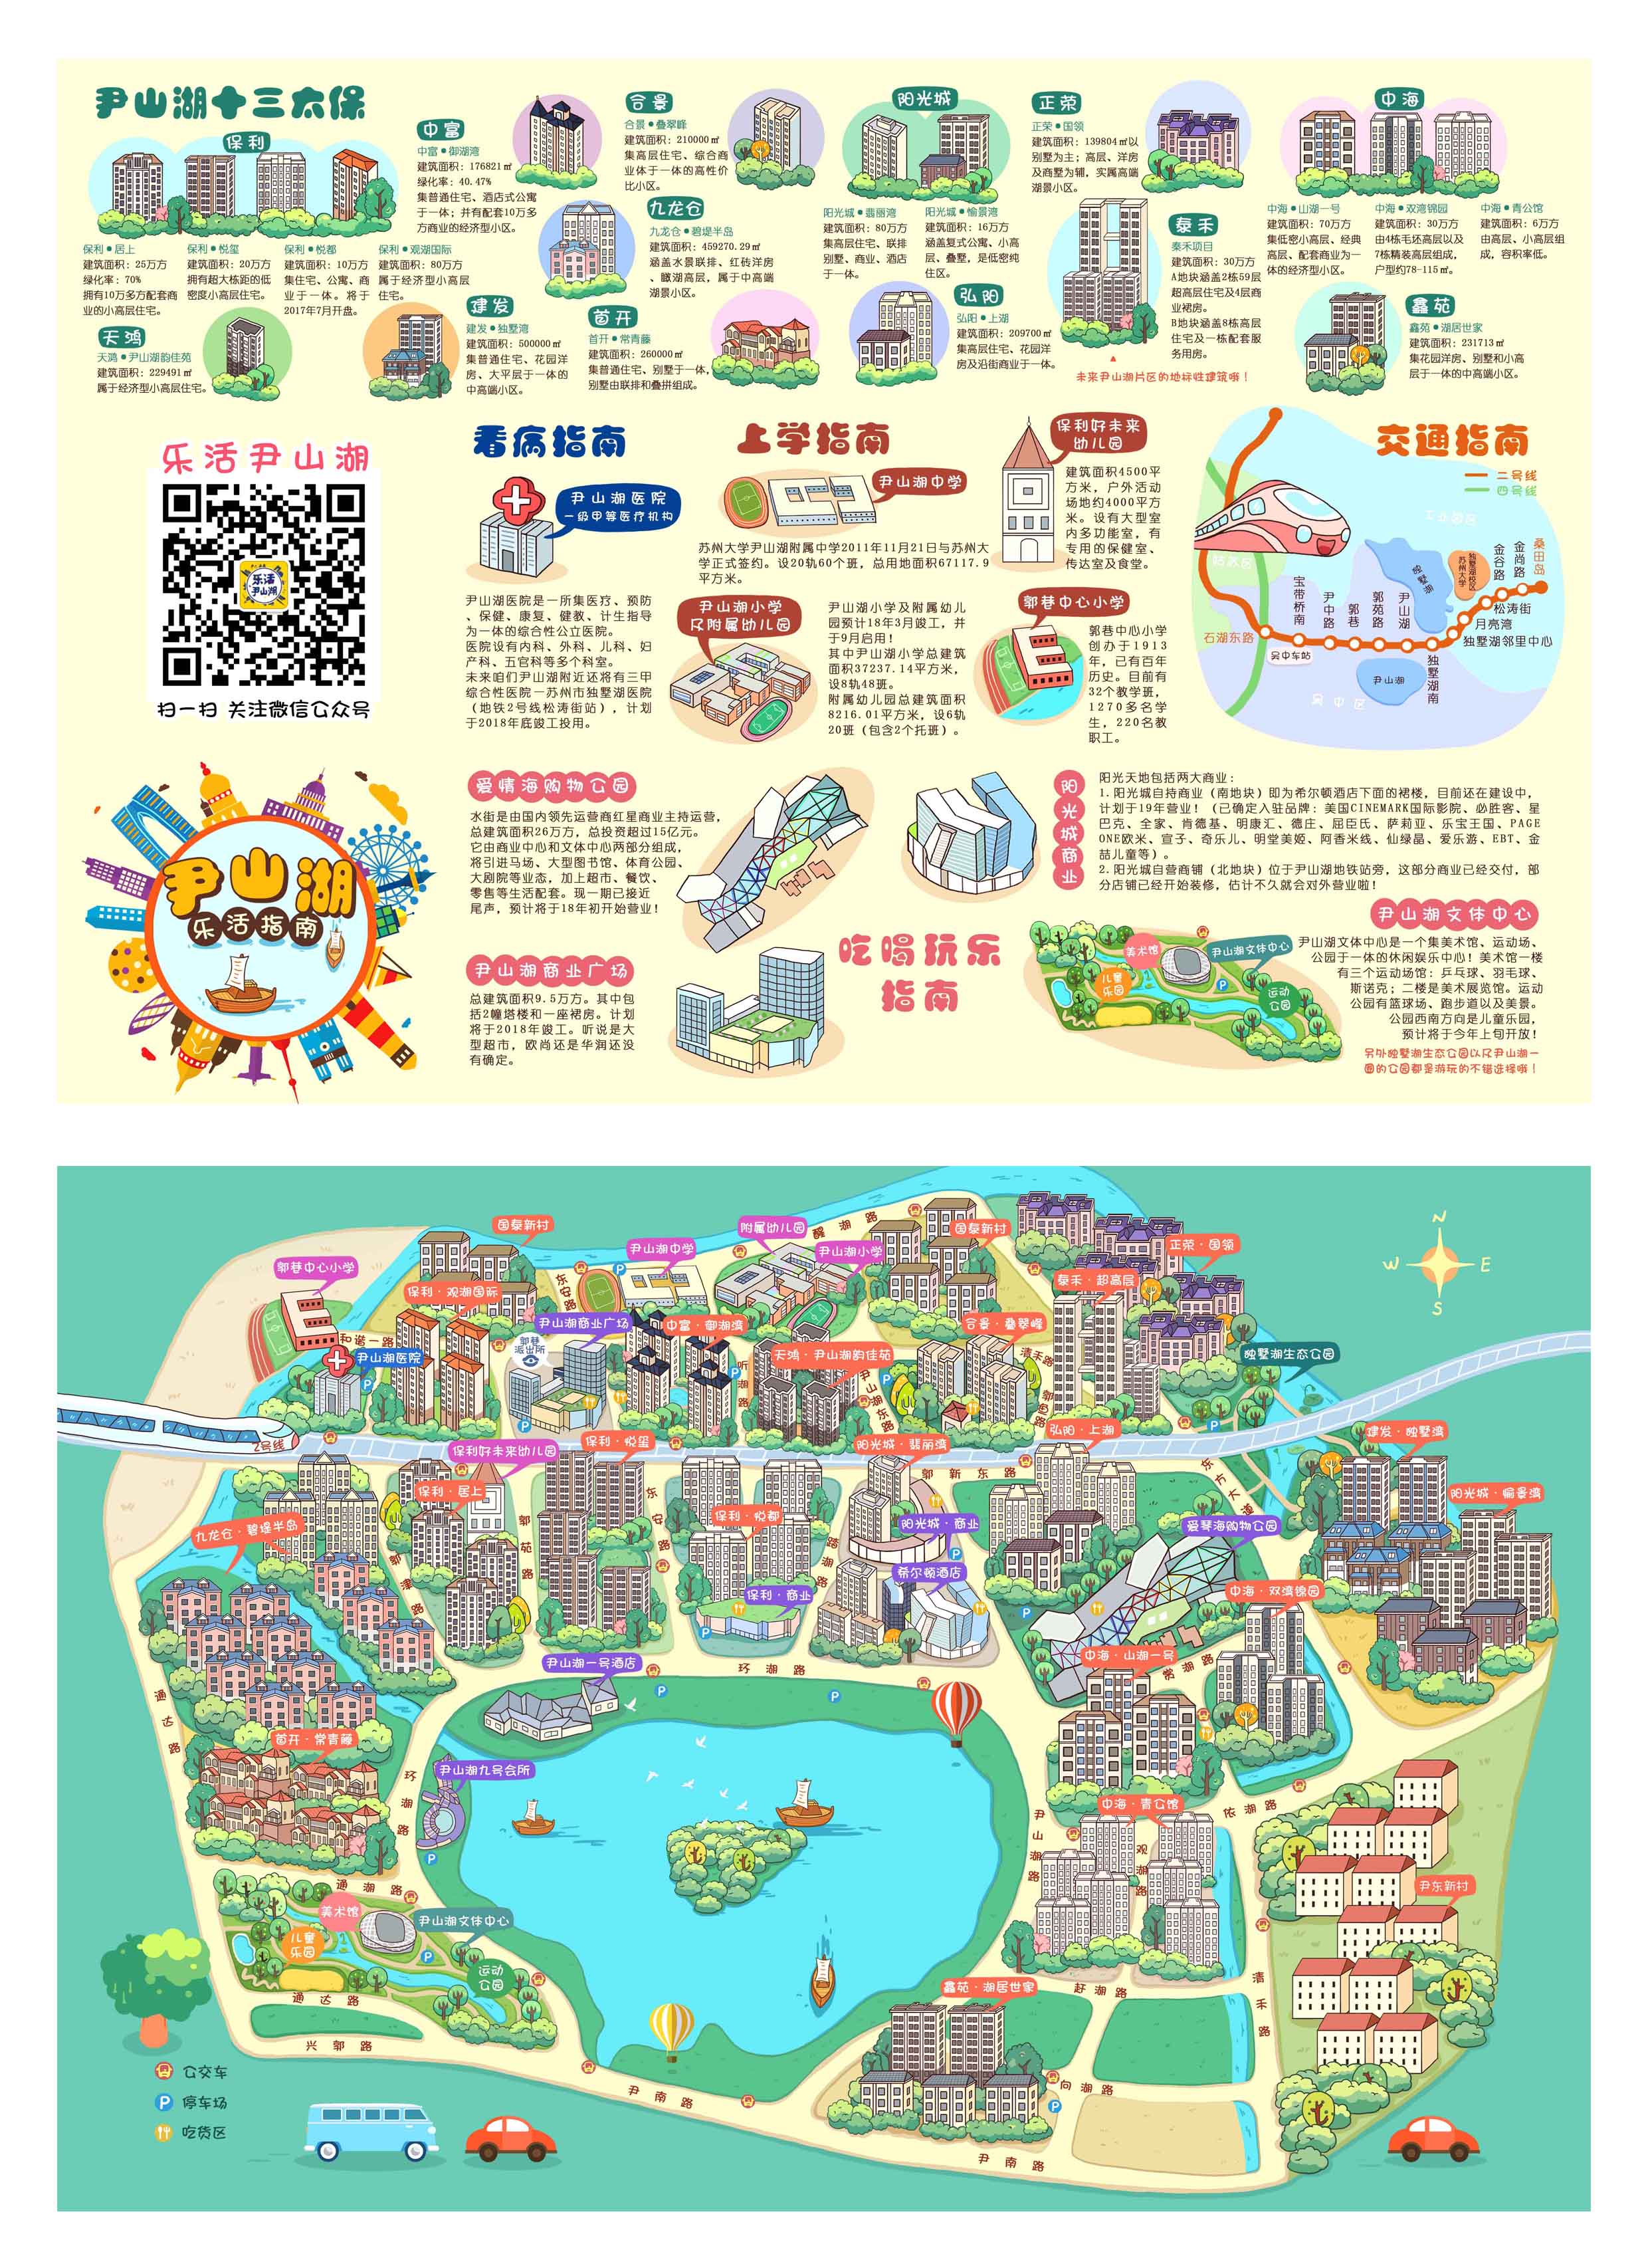 南阳师范学院地图图片